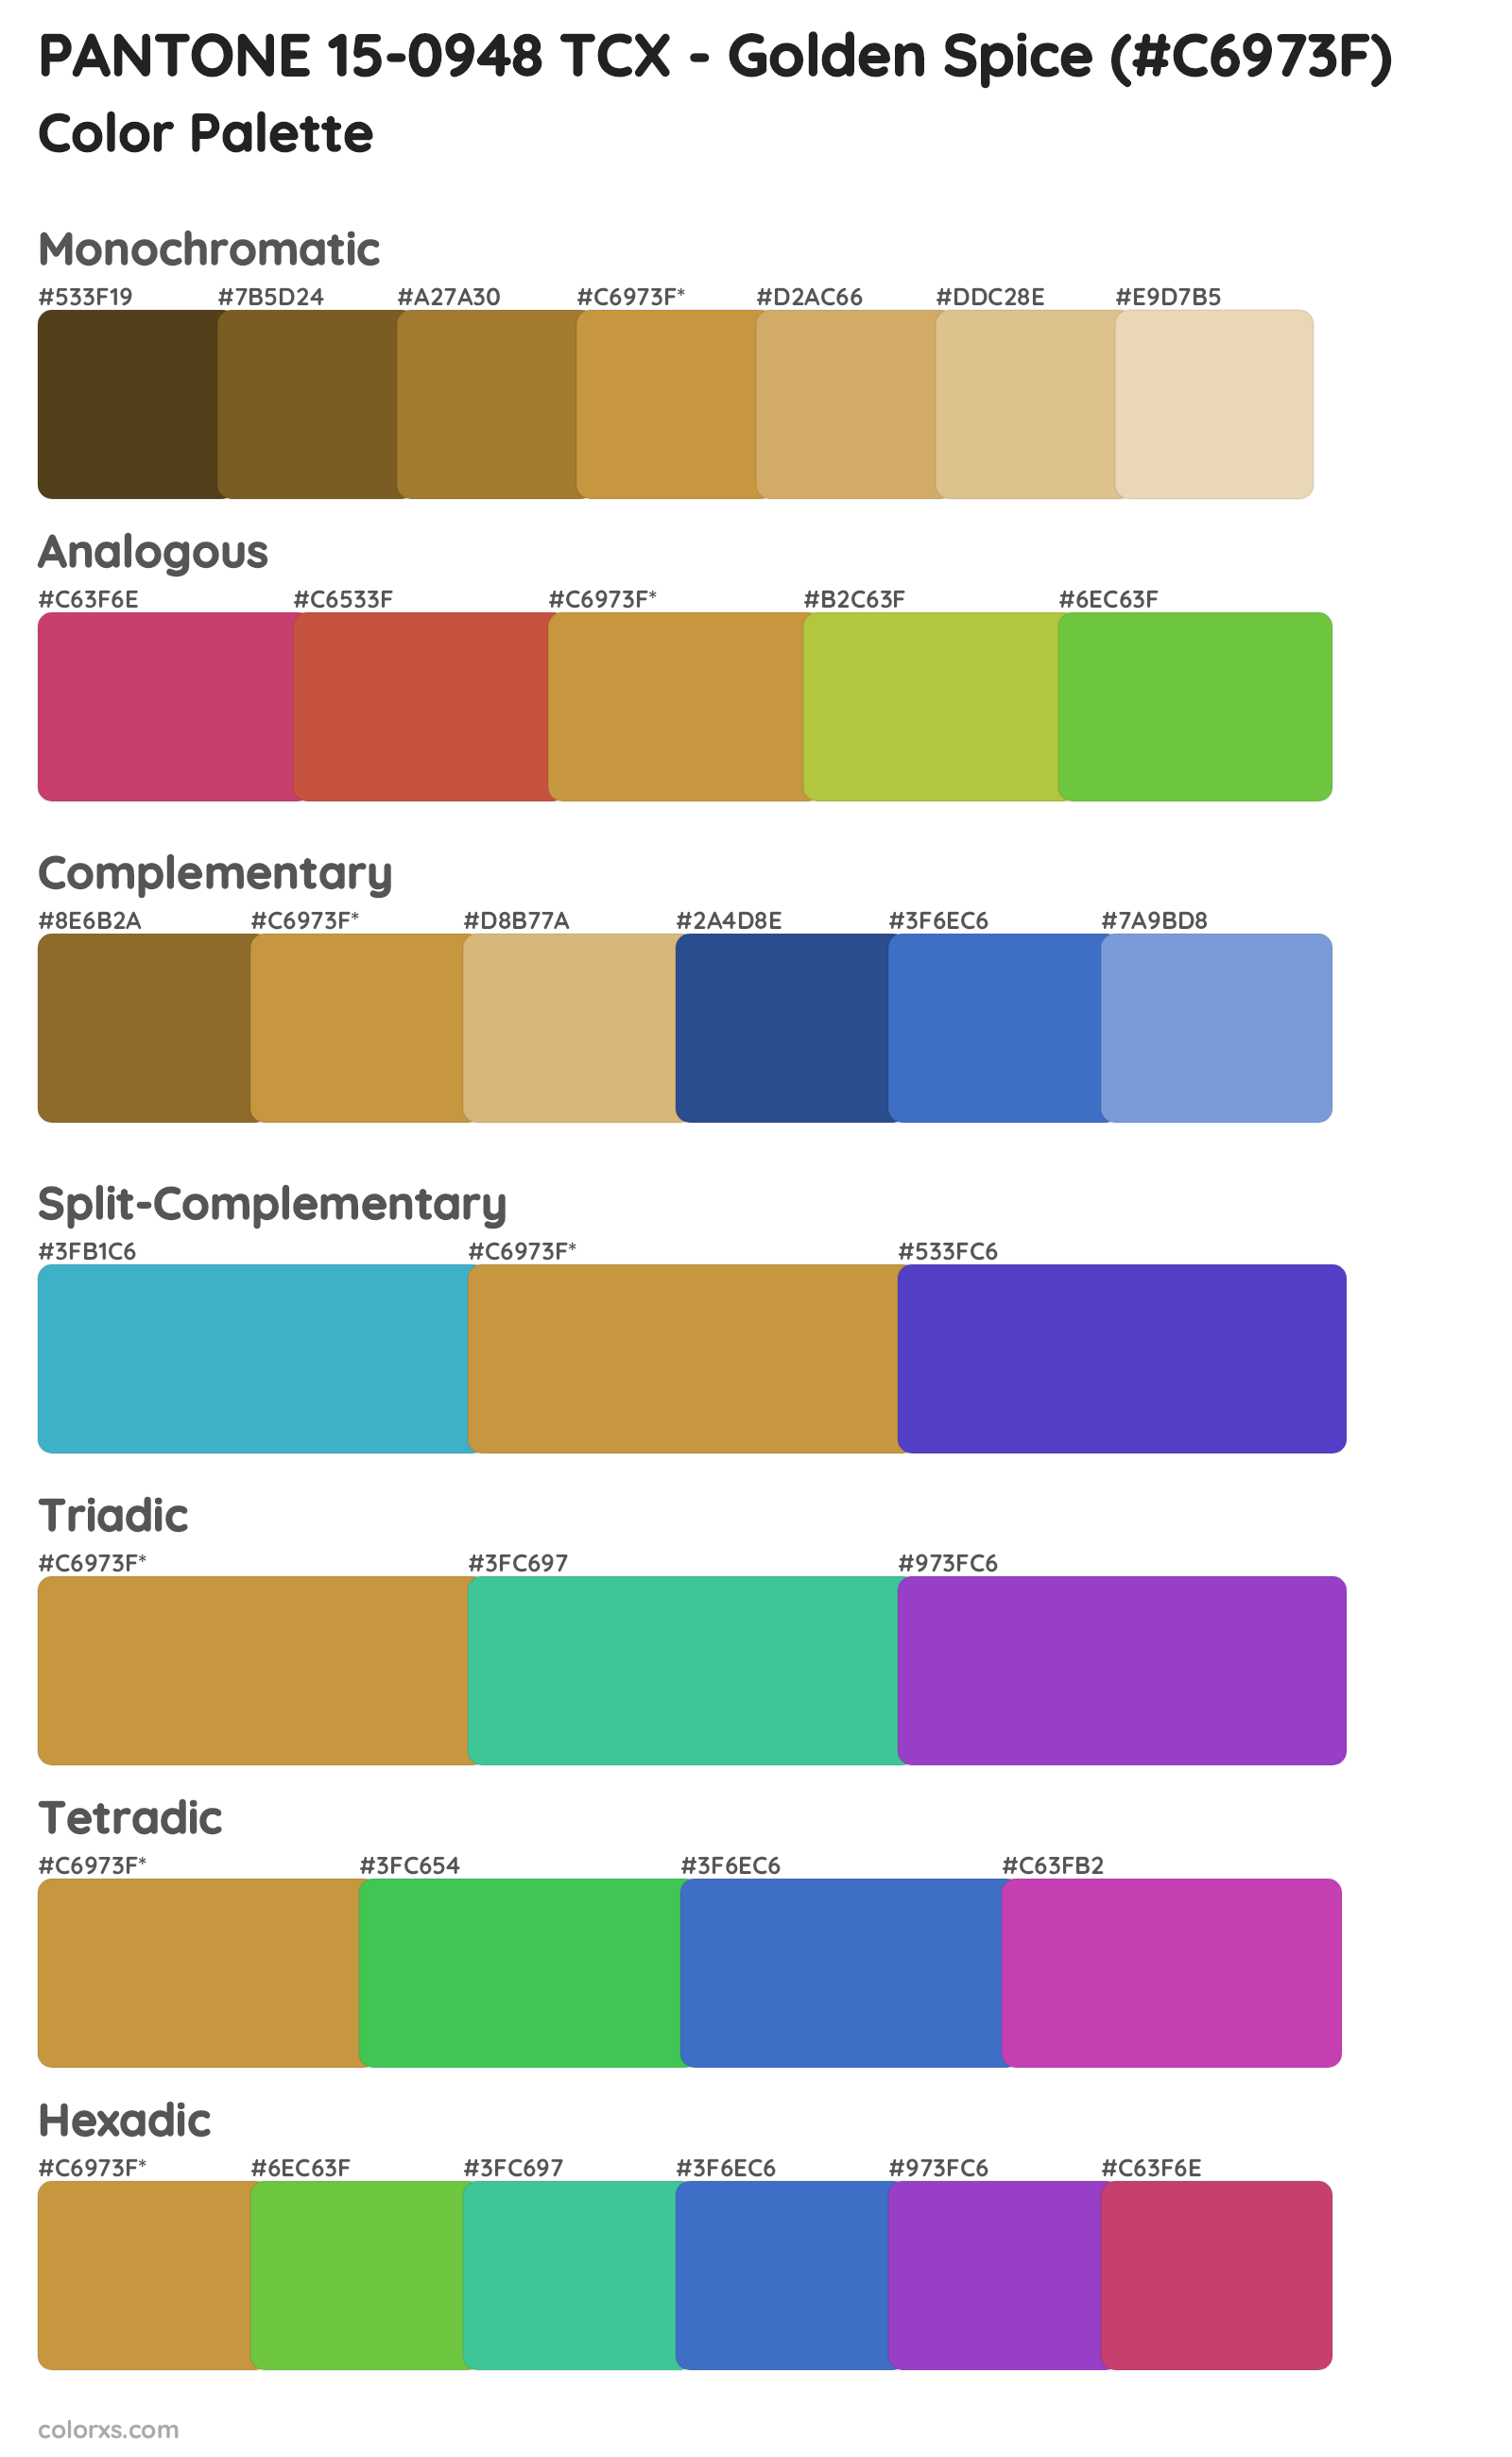 PANTONE 15-0948 TCX - Golden Spice Color Scheme Palettes